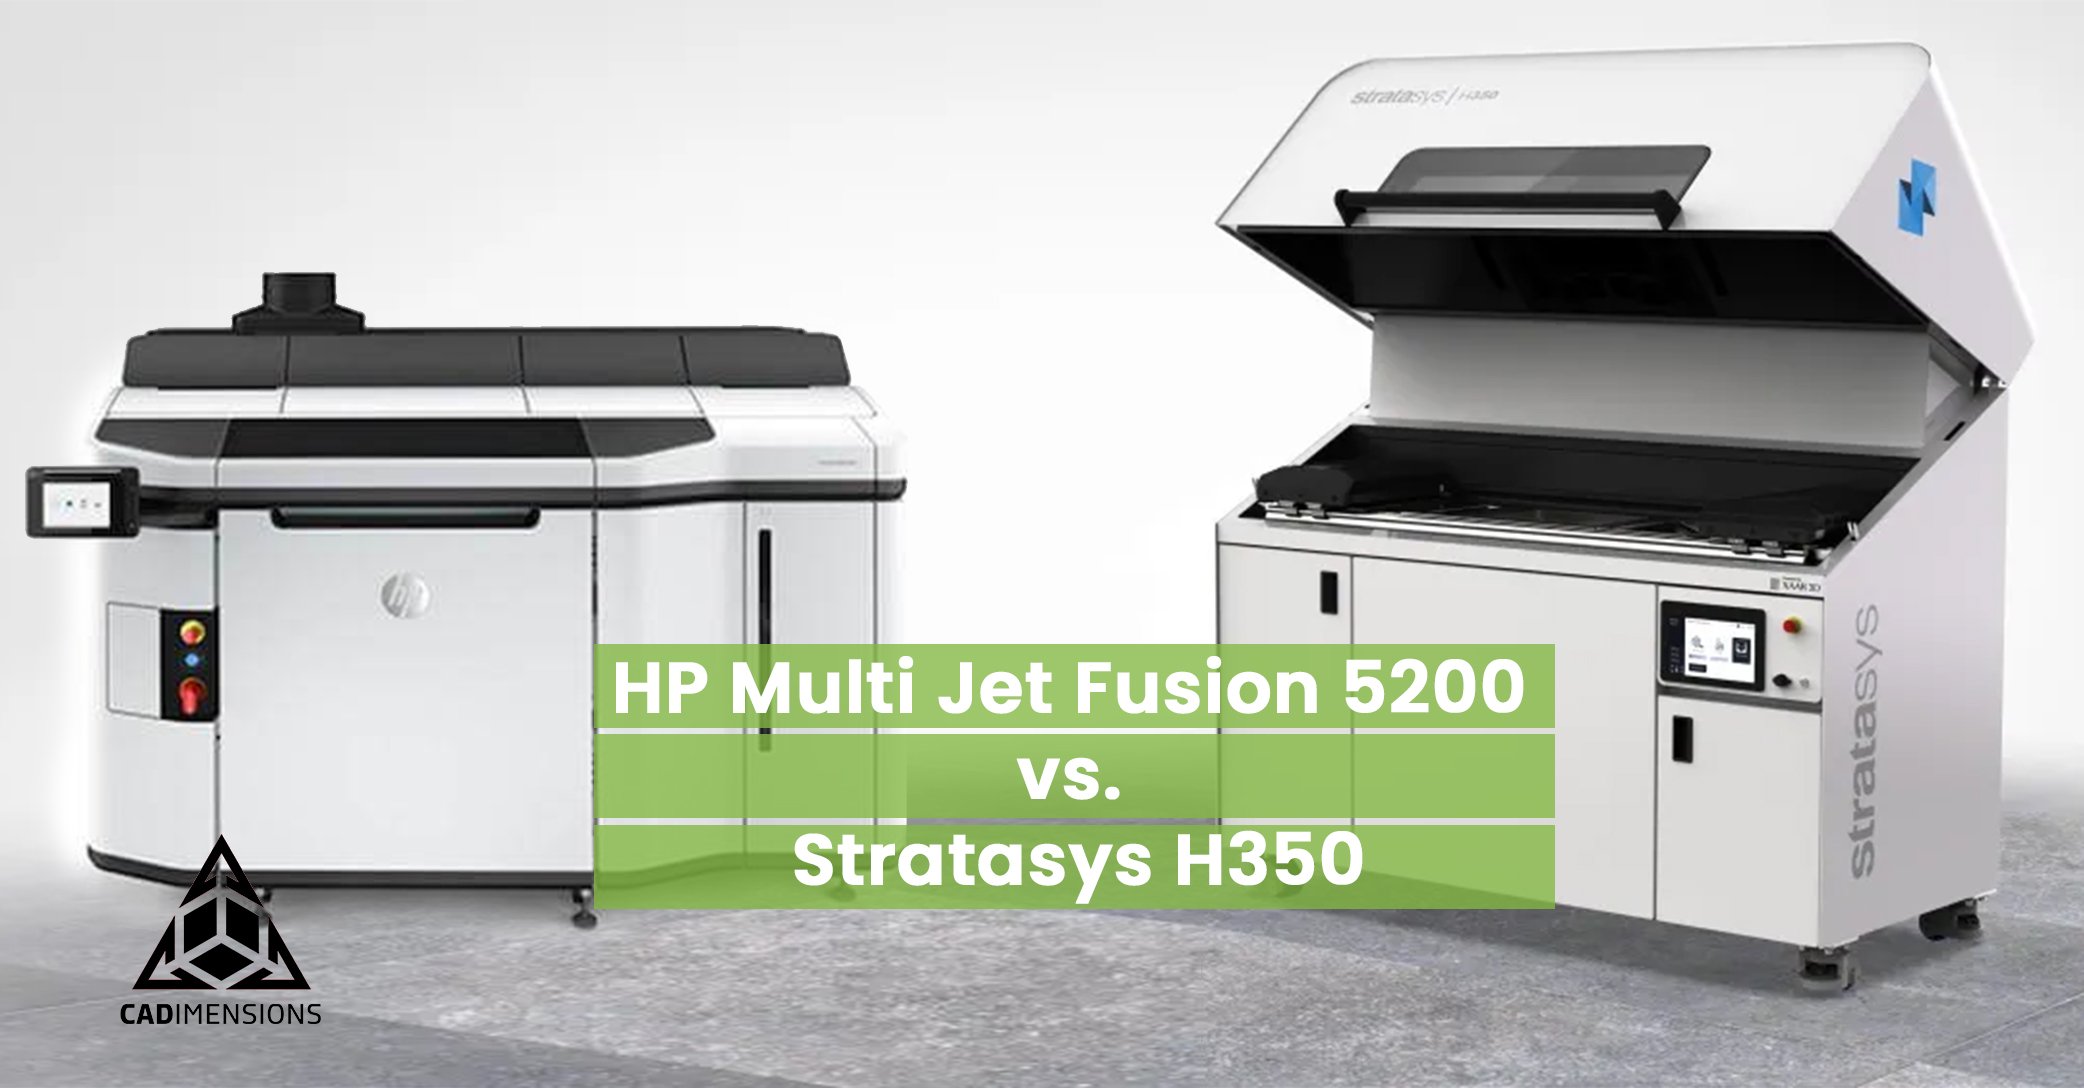 Stratasys H350 vs HP Multi Jet Fusion 5200: Comprehensive 3D Printer Comparison